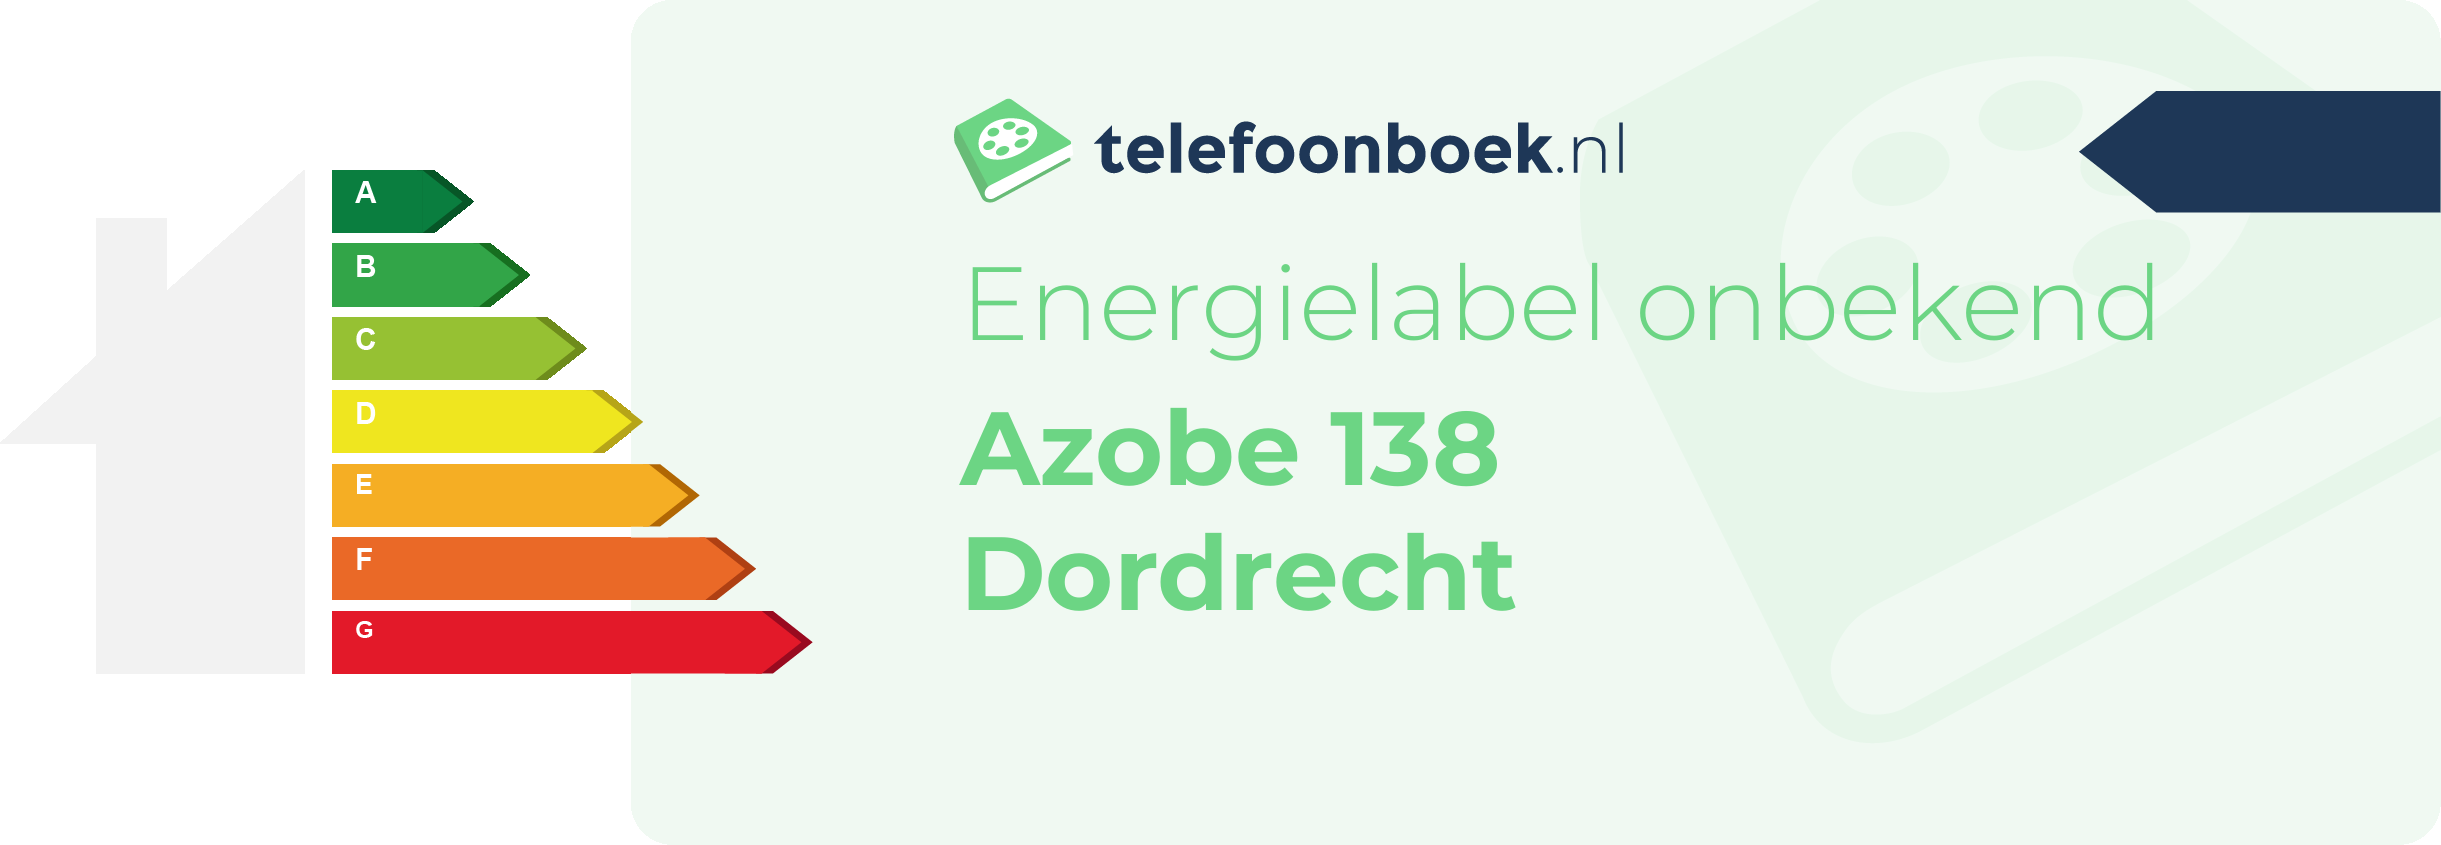 Energielabel Azobe 138 Dordrecht